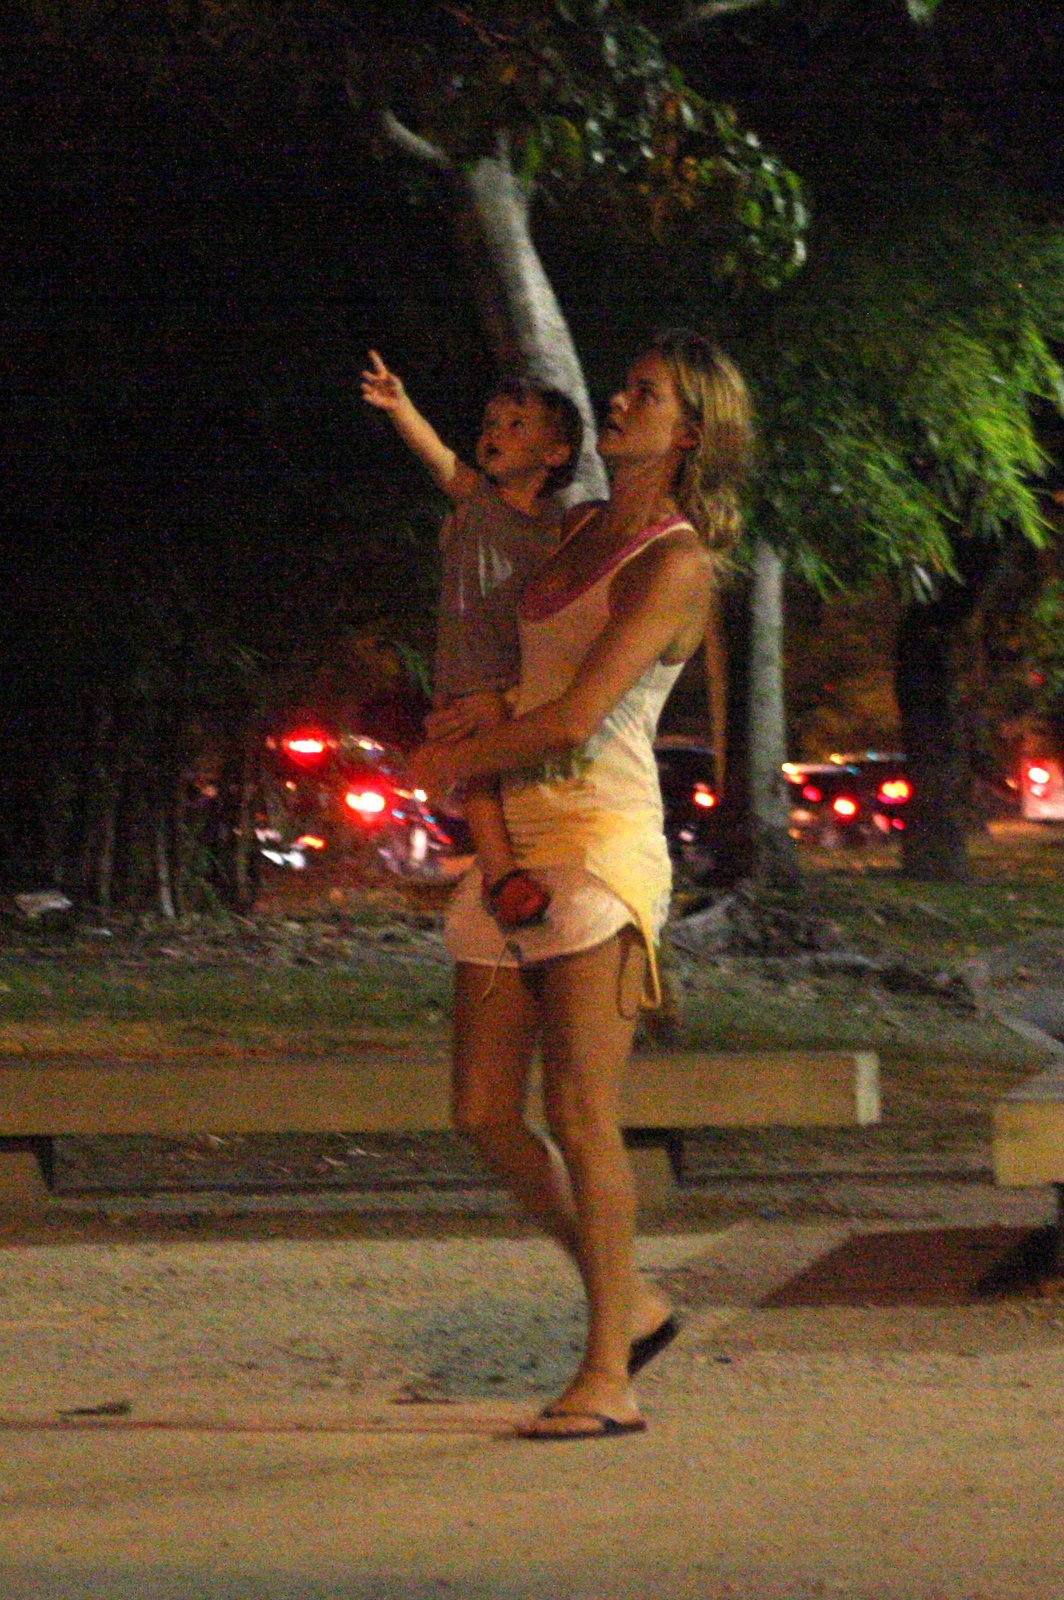 Letícia Birkheuer passeia com o filho na Lagoa (Foto: JC Pereira / Foto Rio News)